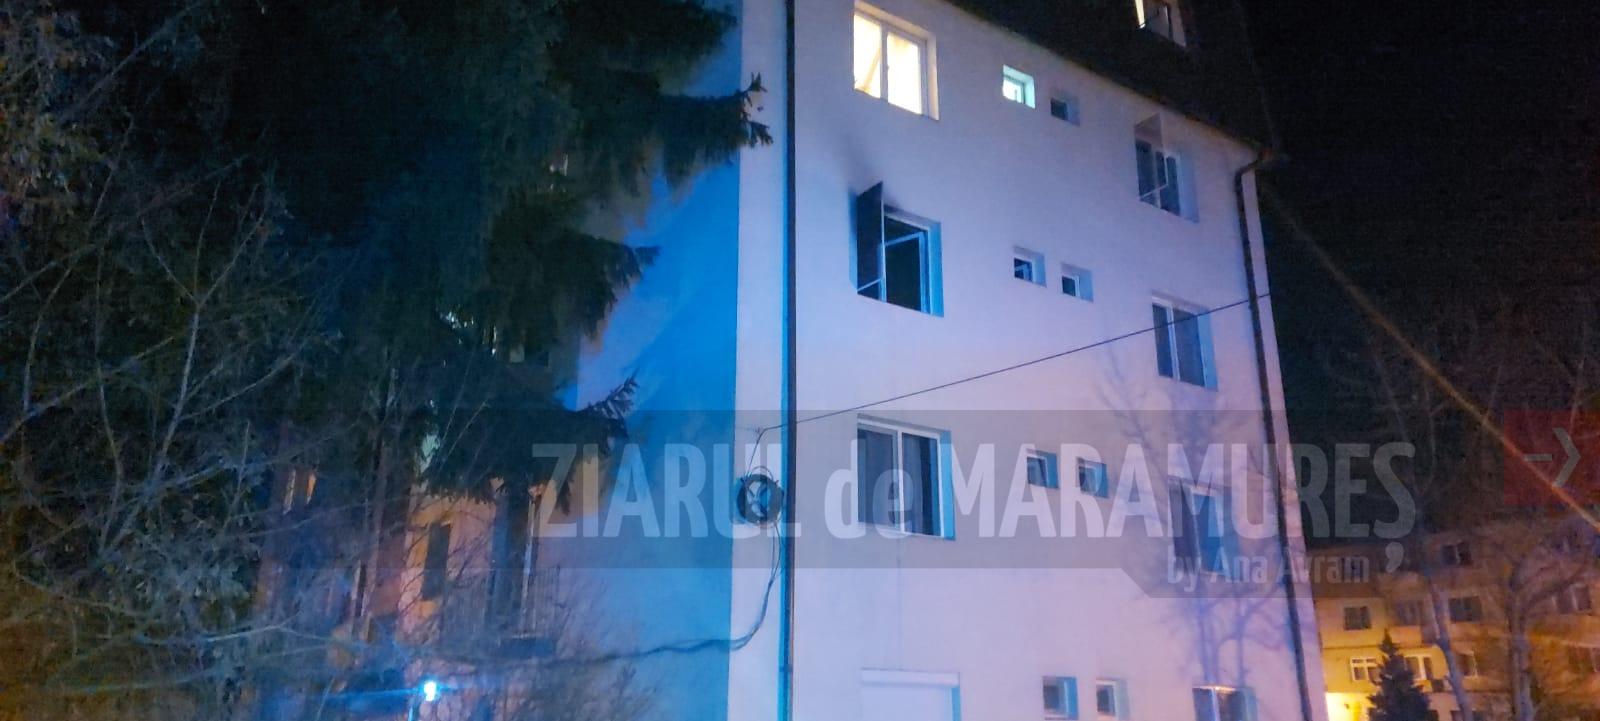 Două victime și 13 persoane evacuate dintr-un bloc situat pe str. Barbu Ștefănescu Delavrancea